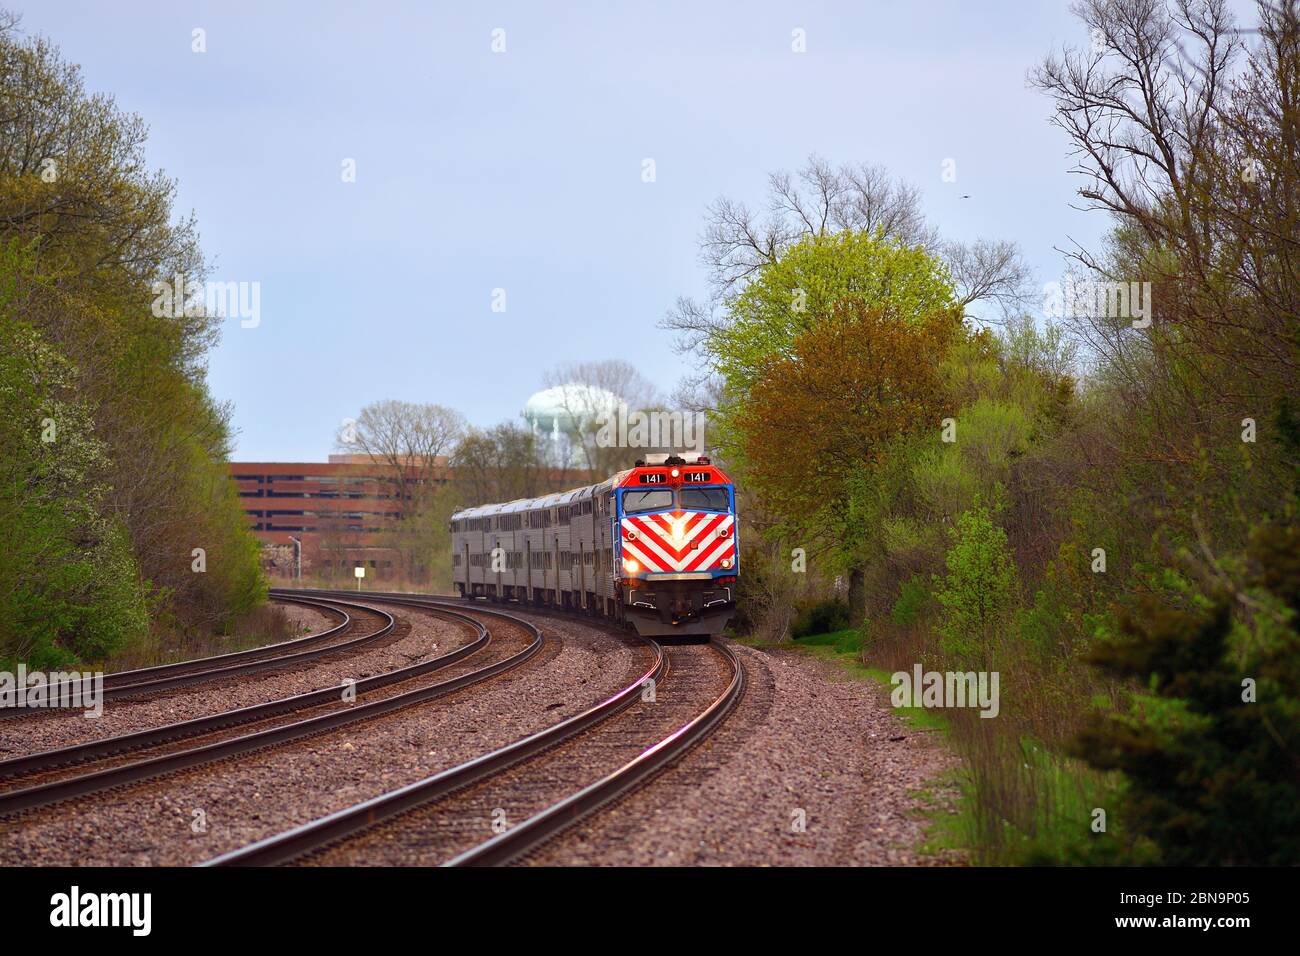 Winfield, Illinois, États-Unis. Un train de banlieue Metra sur une courbe avant d'arriver dans la communauté de Winfield, une banlieue de Chicago. Banque D'Images